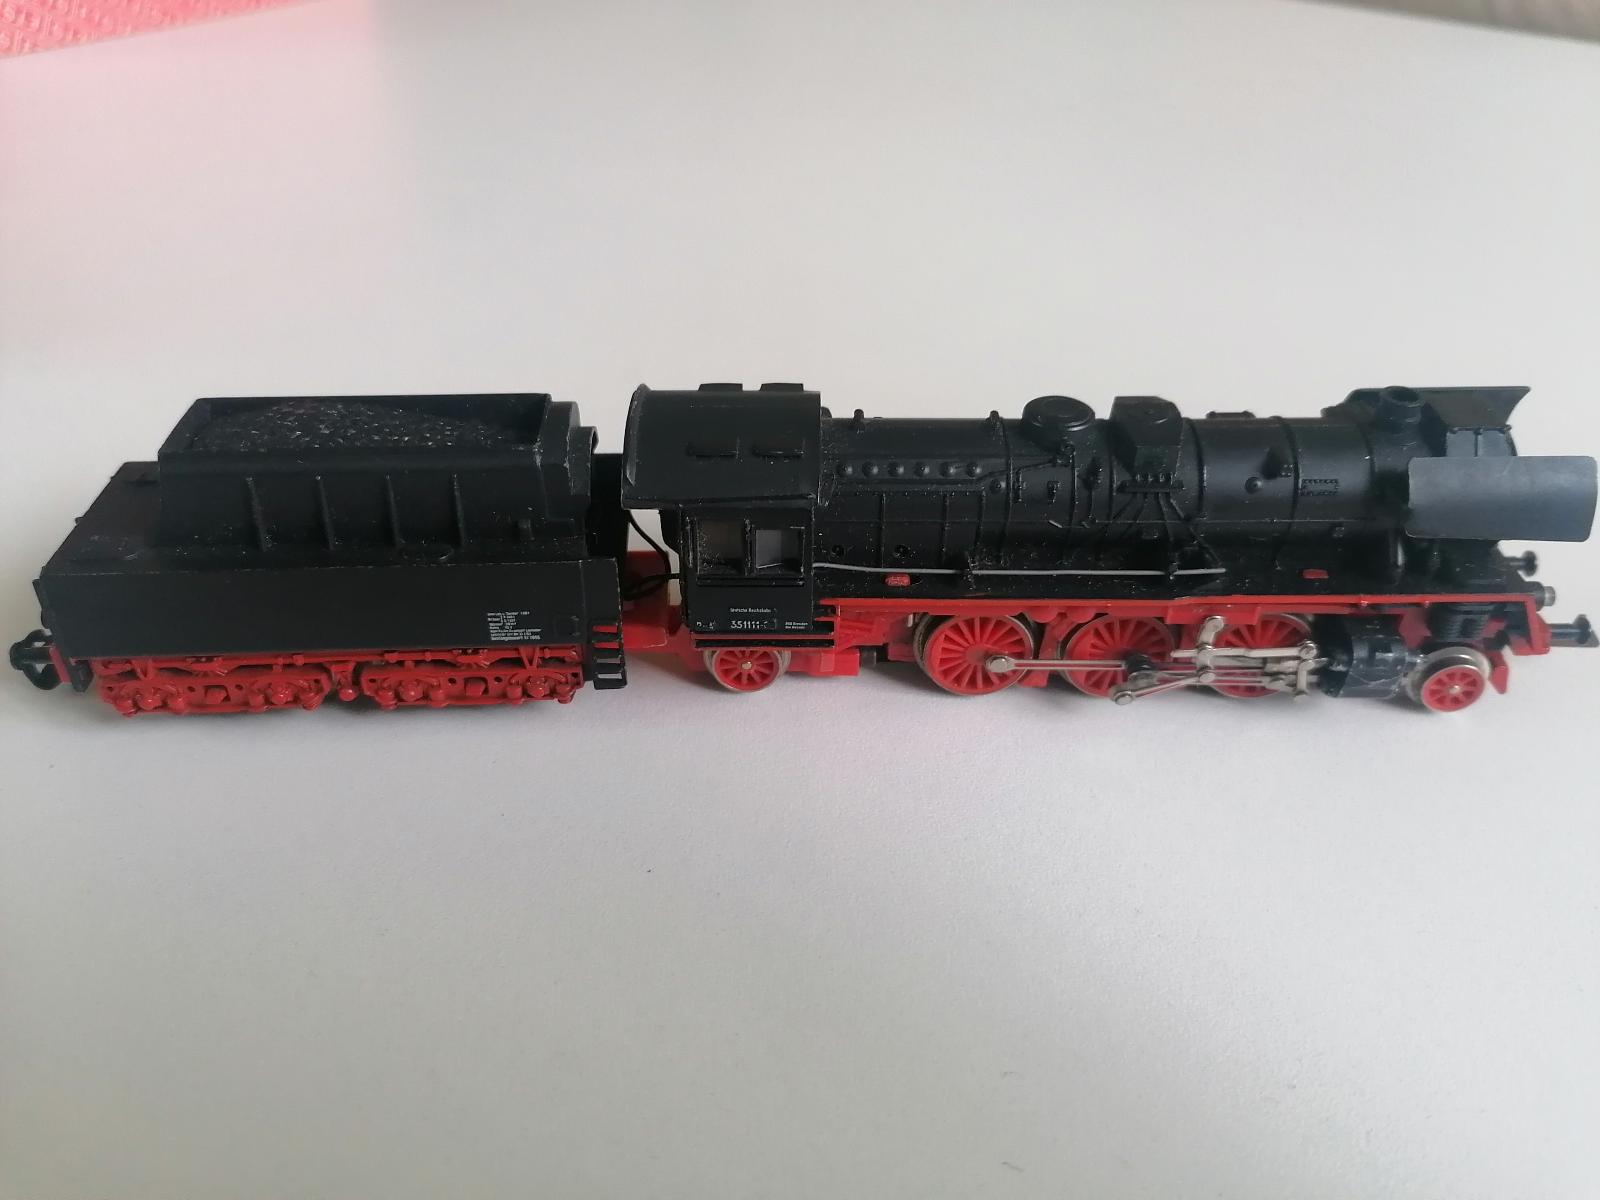 TT lokomotiva s vagonem - Modelová železnice